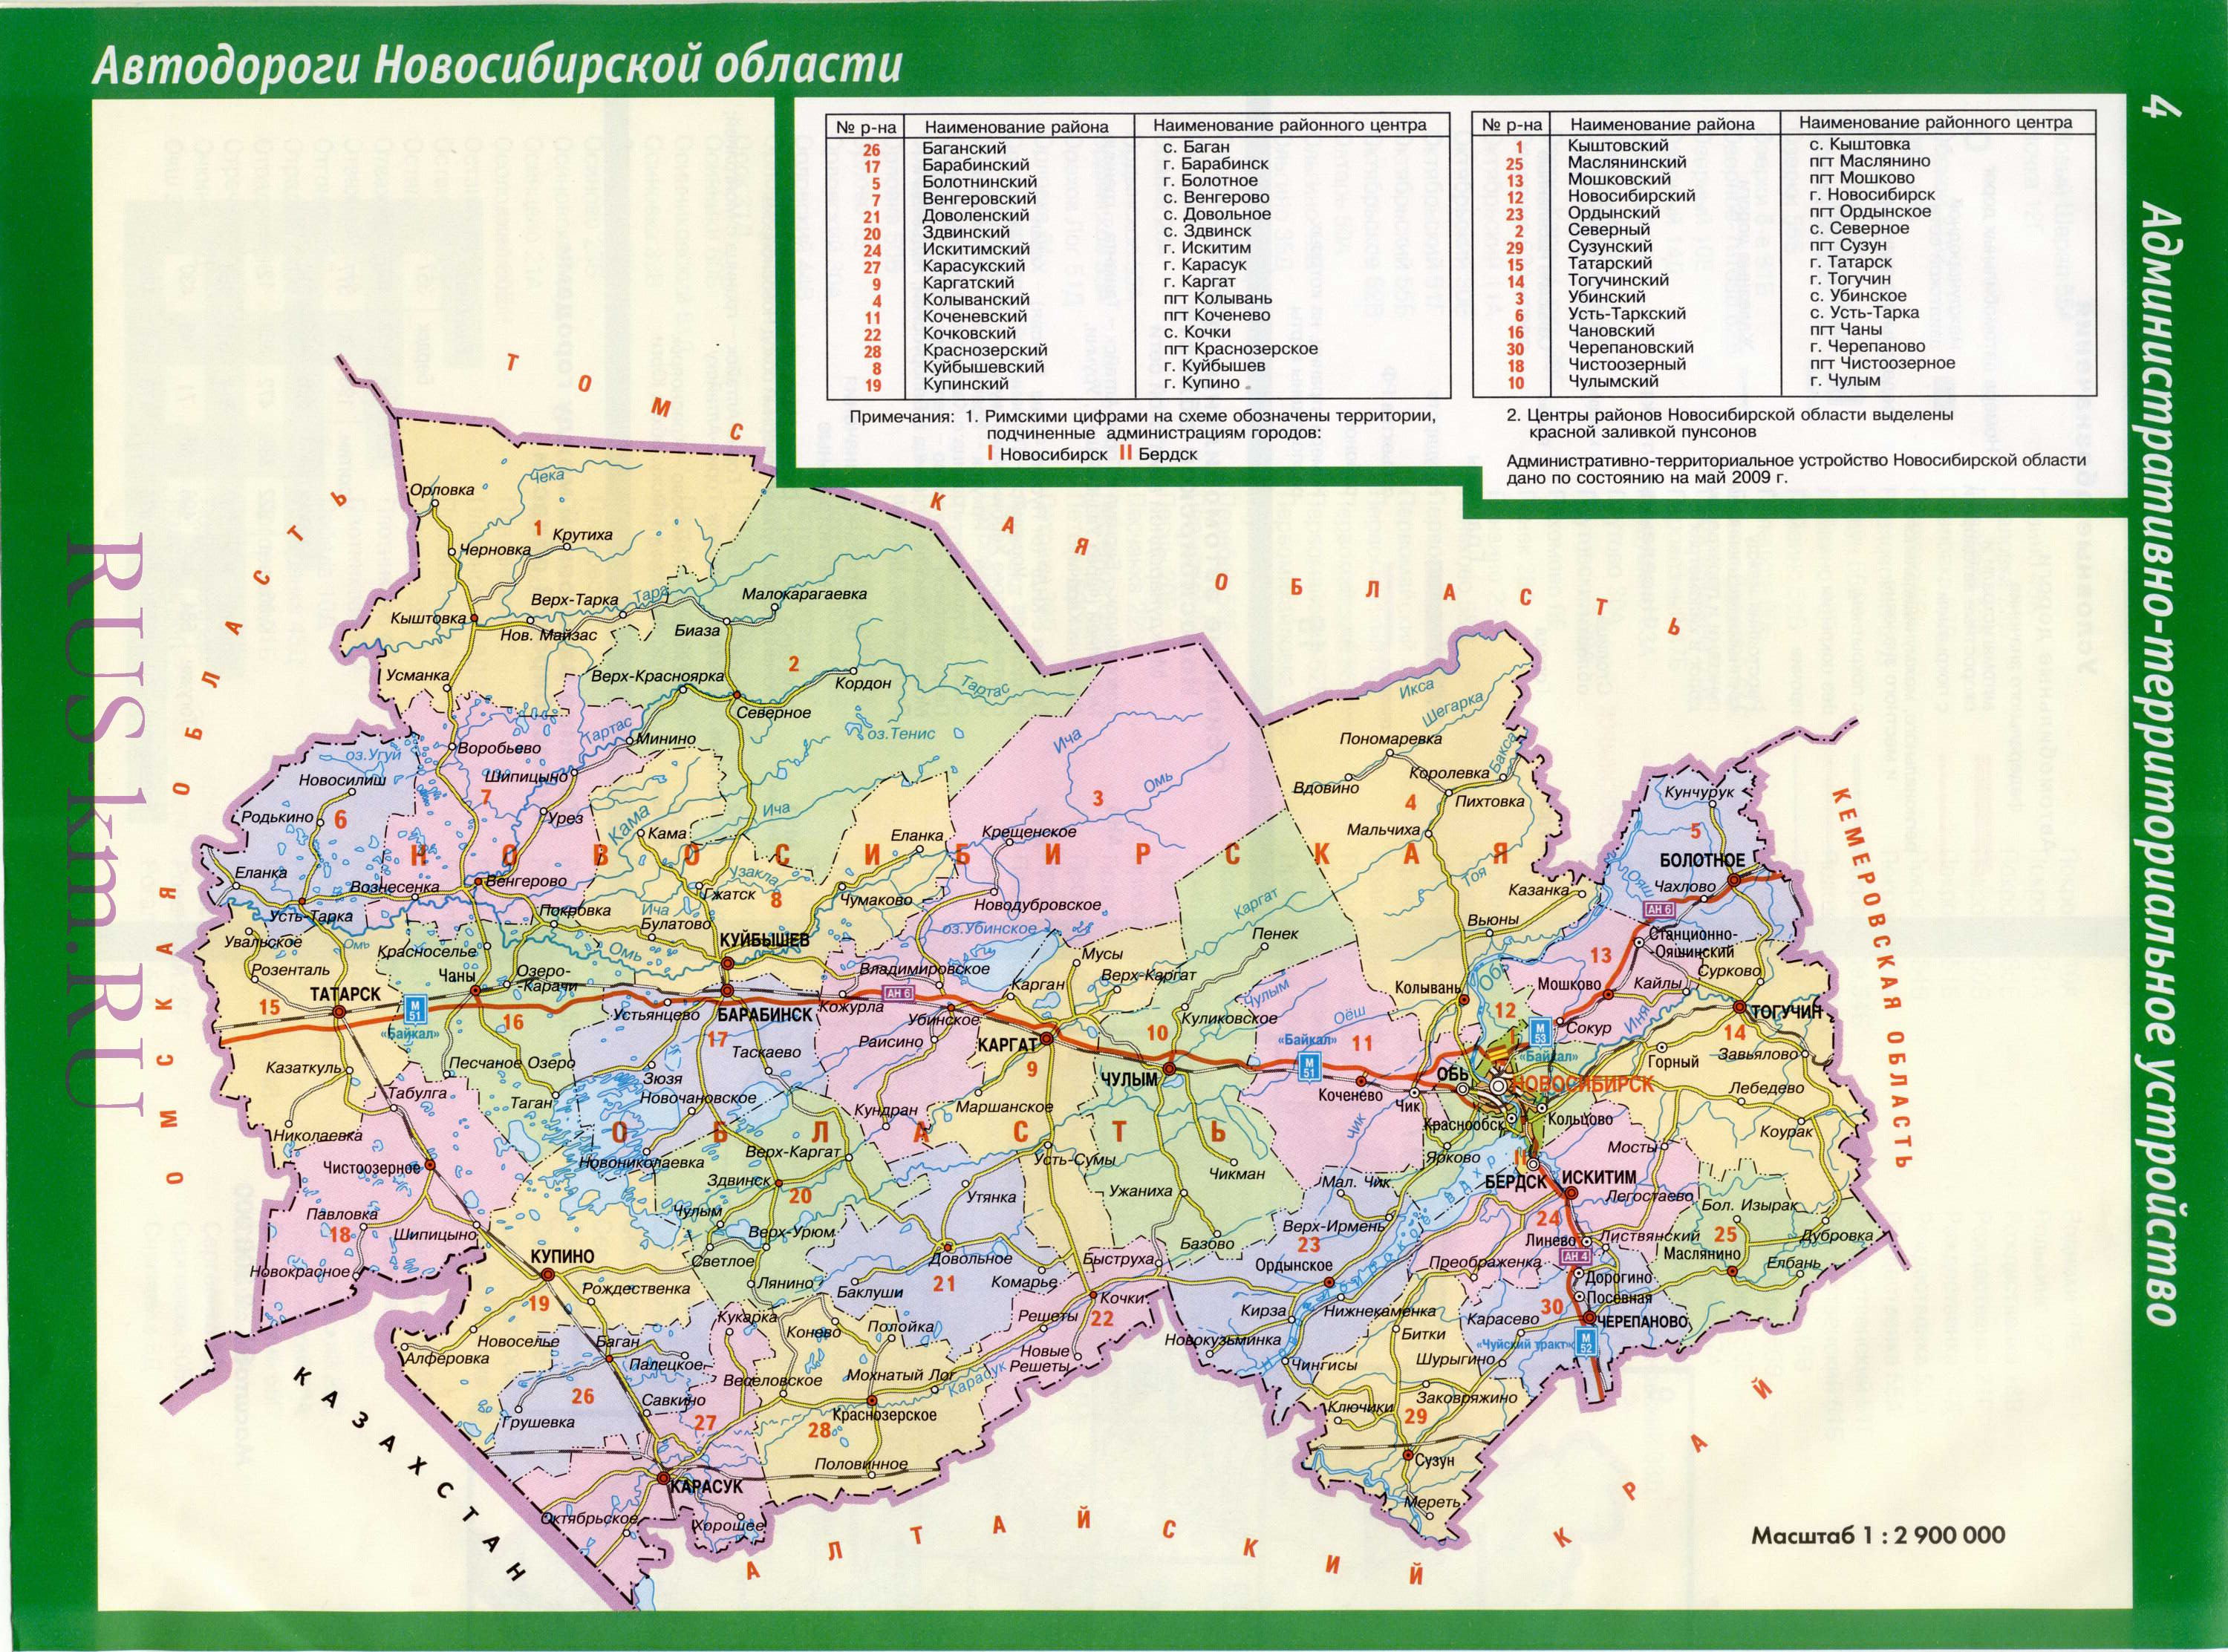 Сибирь - подробные карты областей Сибирского федерального округа, A0 - Новосибирская область по районам